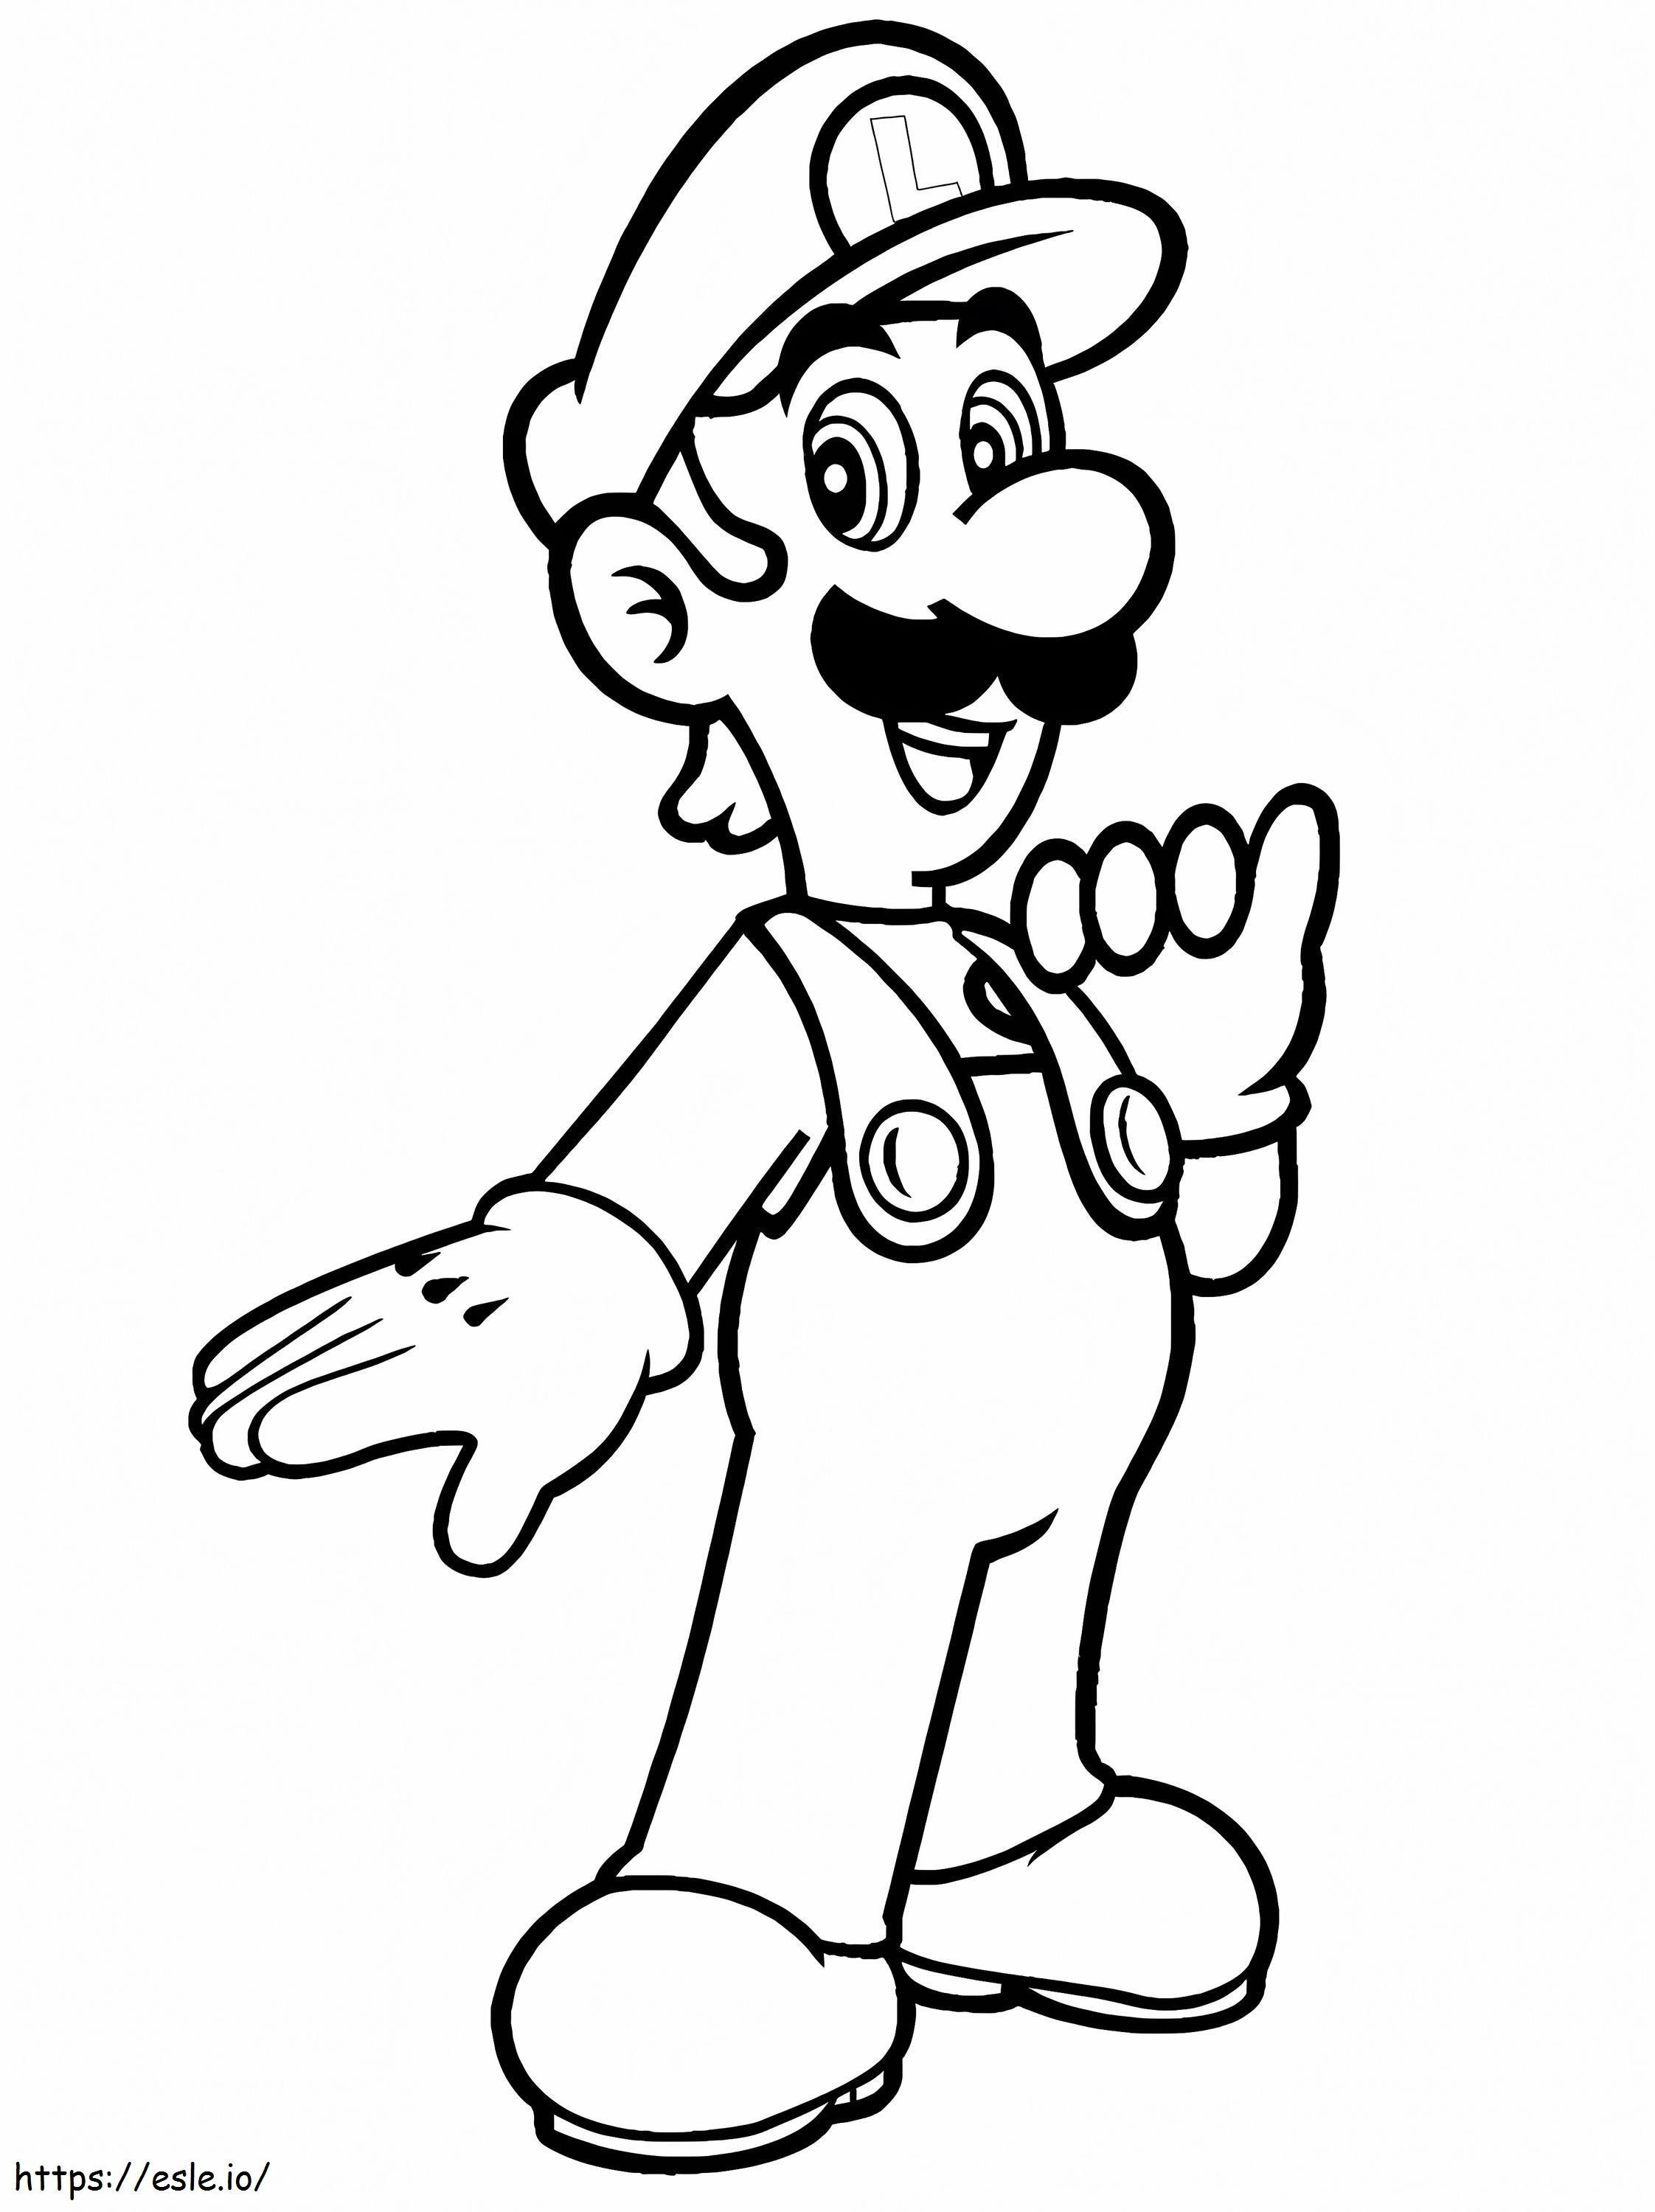 Louis De Super Mario 1 kleurplaat kleurplaat